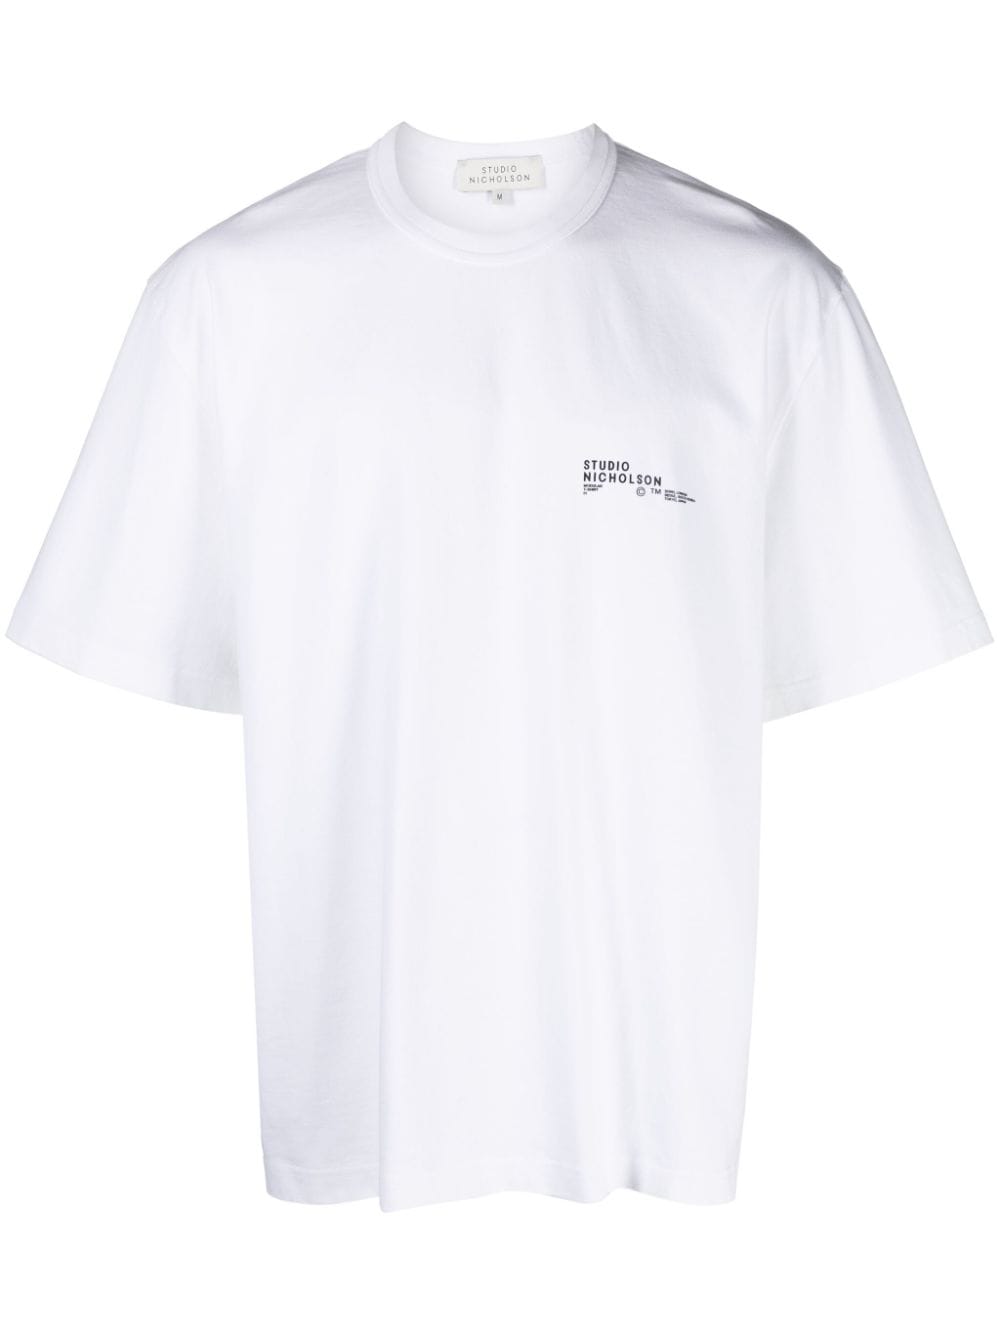 studio nicholson t-shirt module en coton - blanc